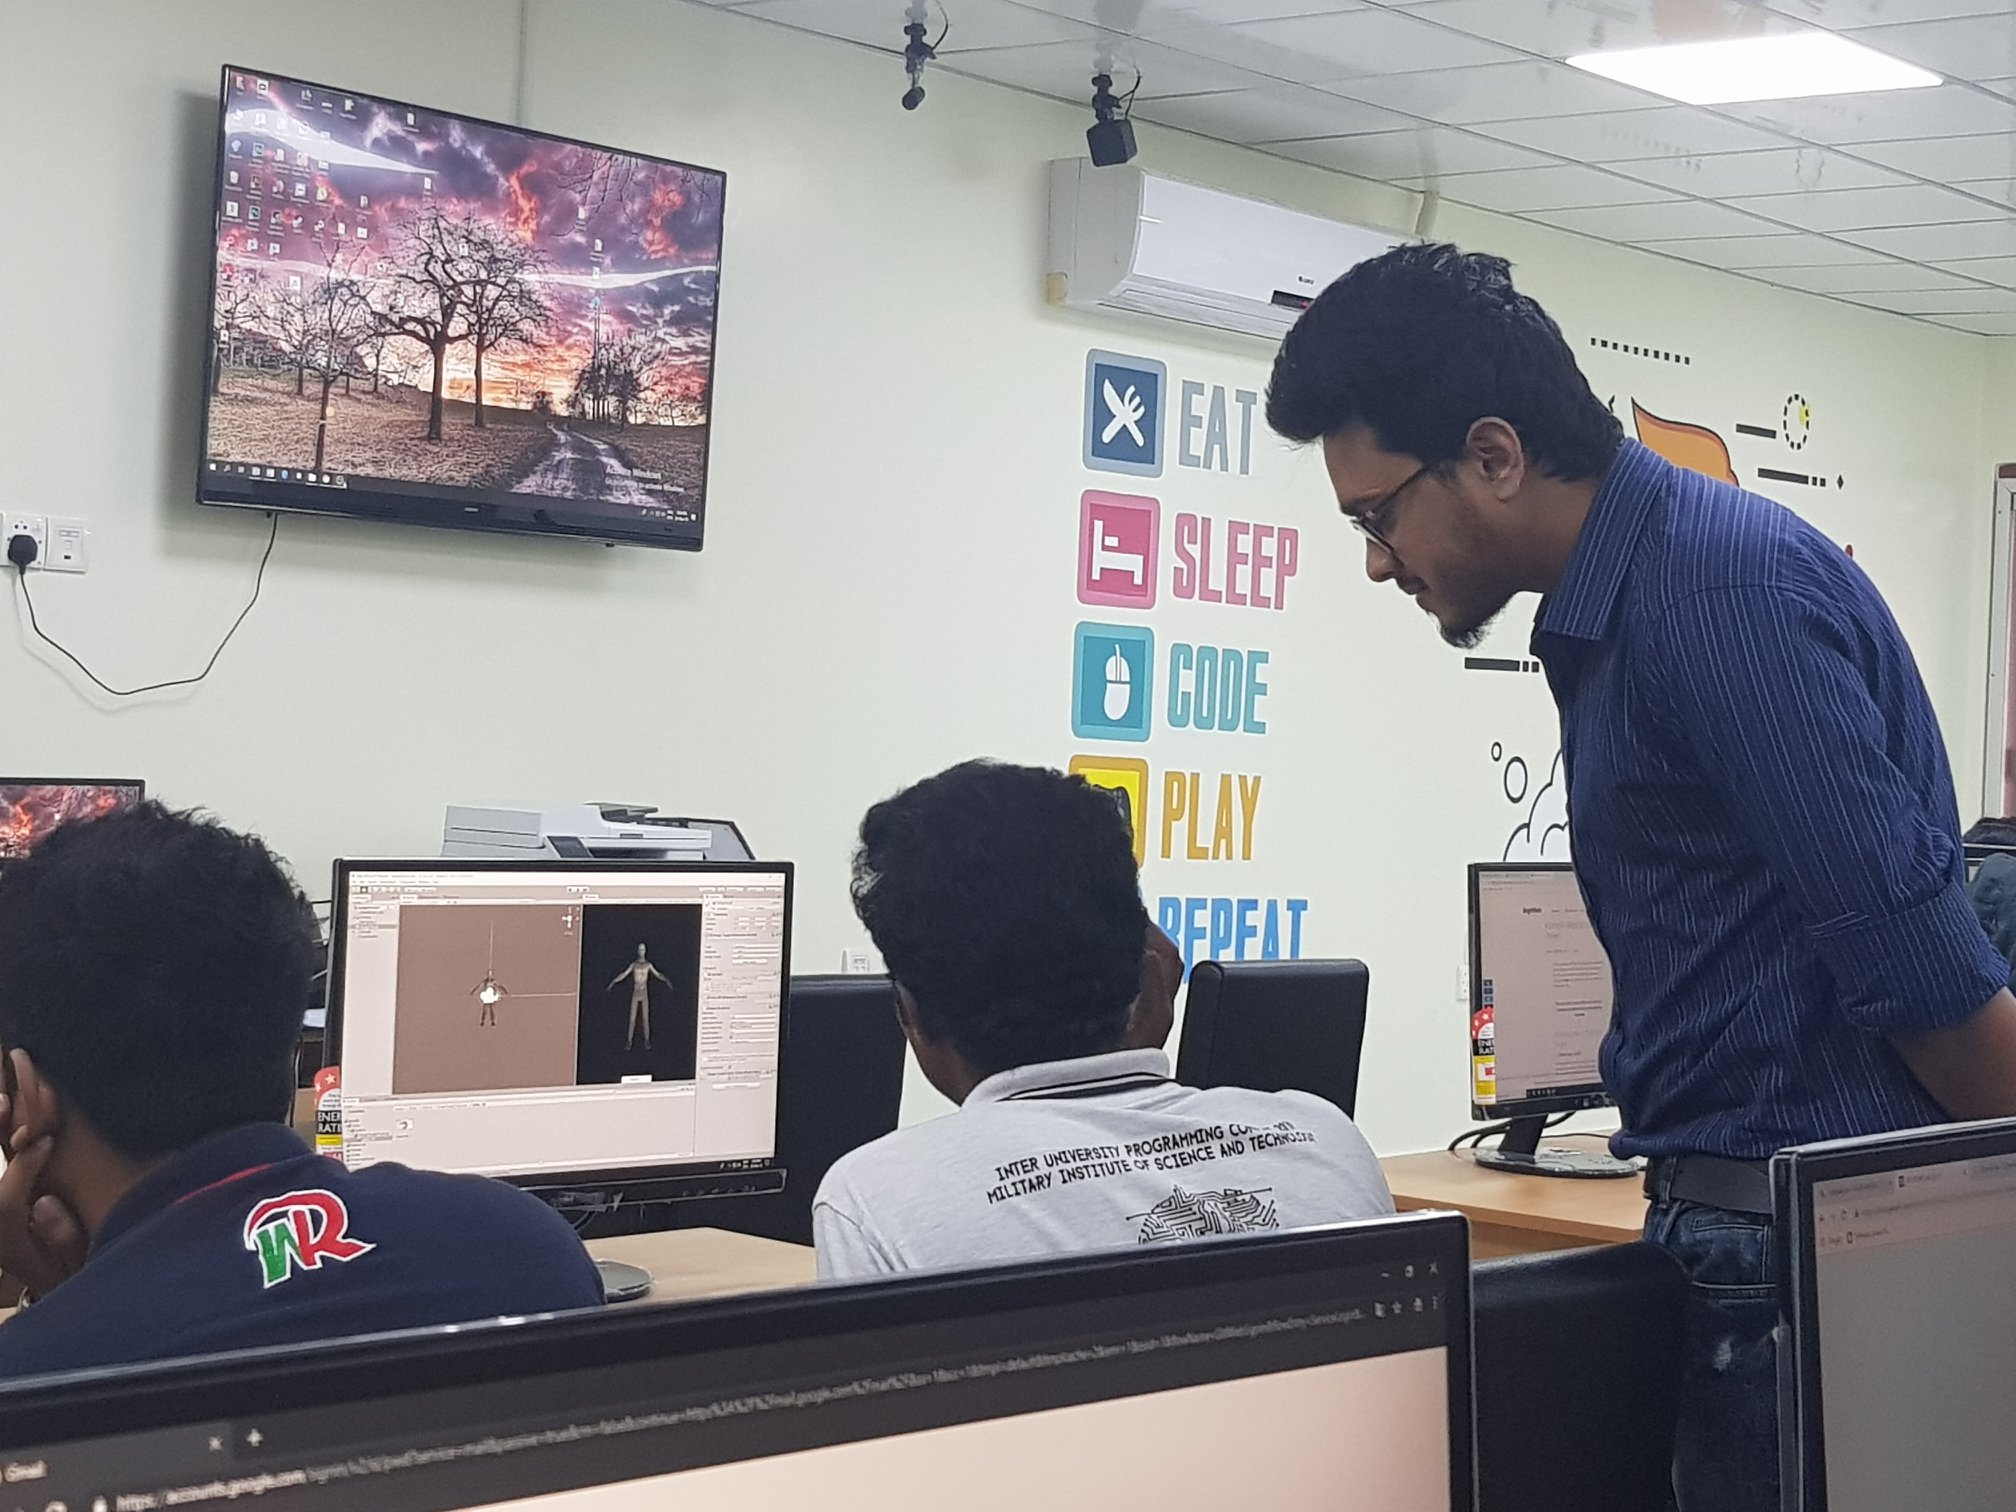 Rajshahi University AR VR MR Lab